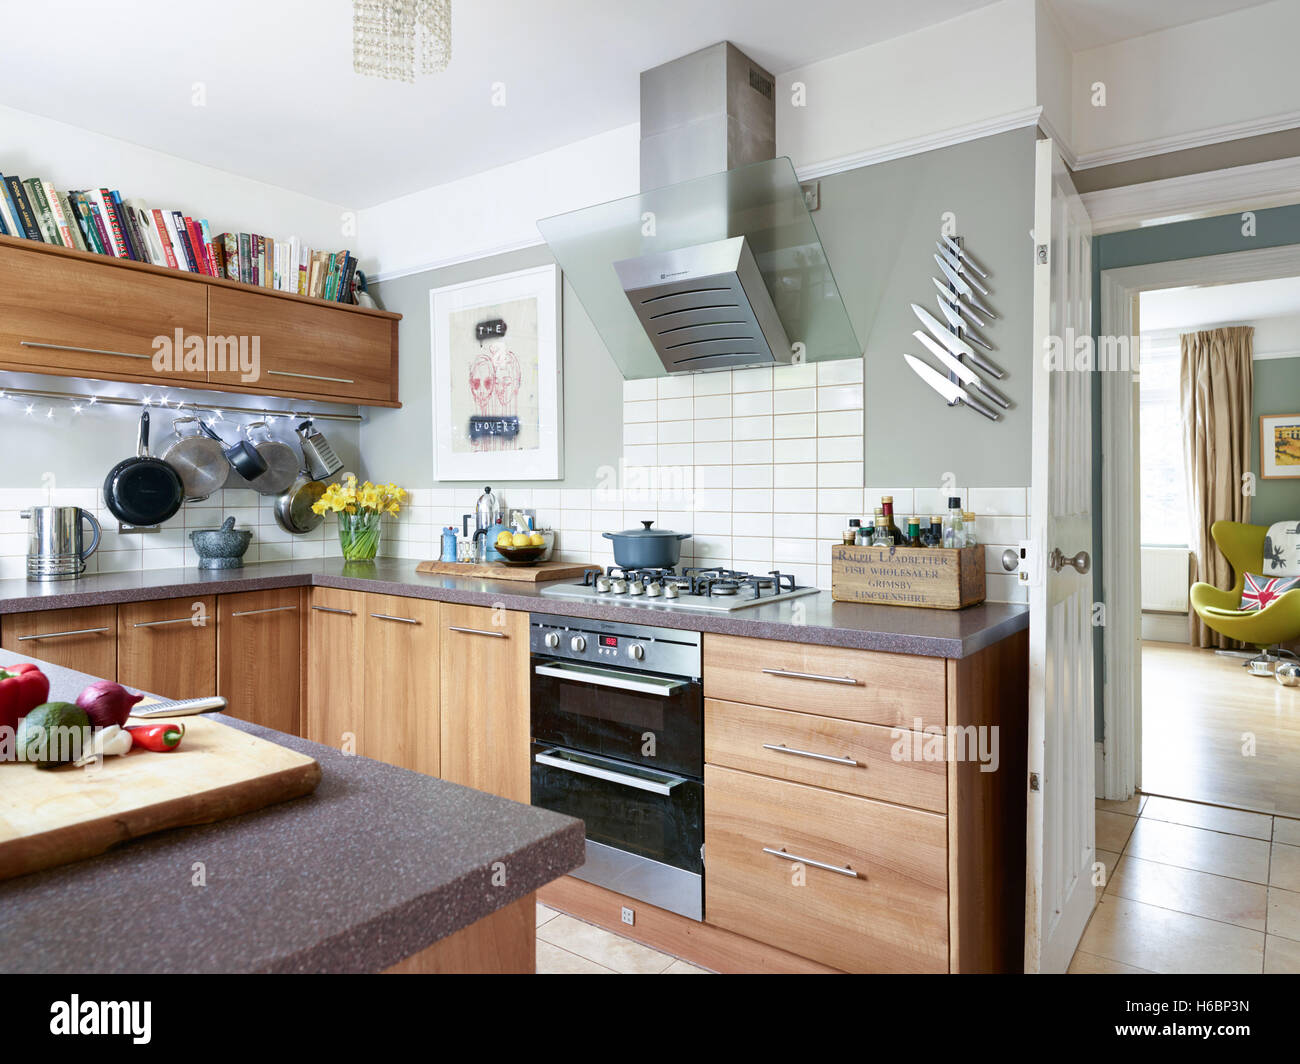 Eine moderne, frische offene Küche mit einer integrierten Backofen Herd & eine Haube & Gloucestershire, UK Stockfoto